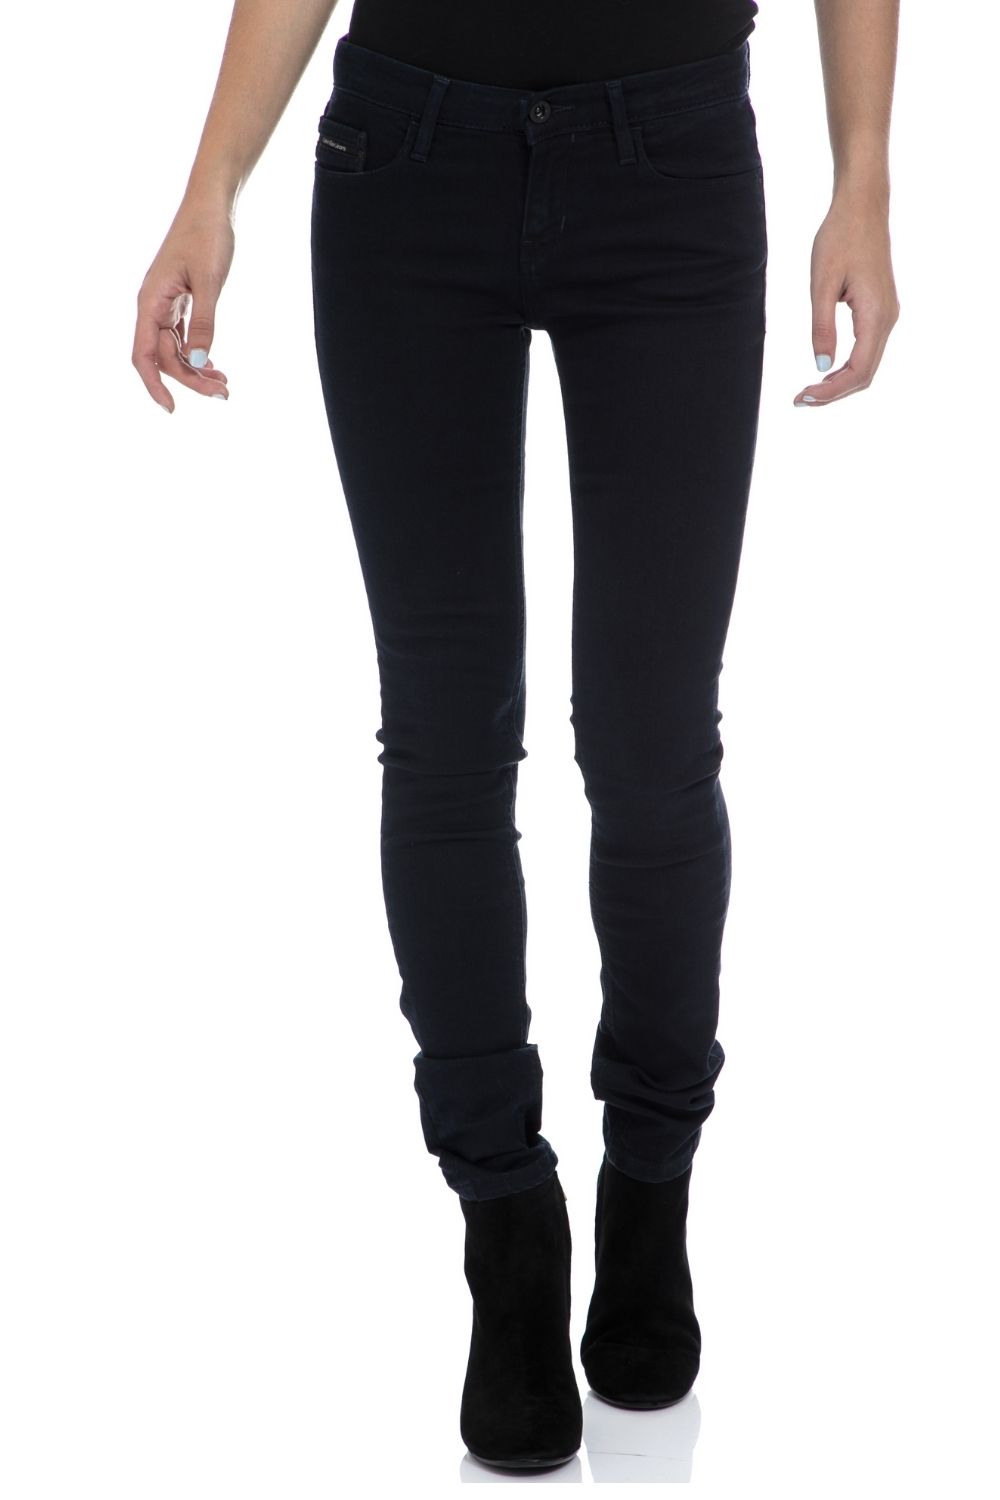 Γυναικεία/Ρούχα/Τζίν/Skinny CALVIN KLEIN JEANS - Γυναικείο παντελόνι CALVIN KLEIN JEANS μαύρο